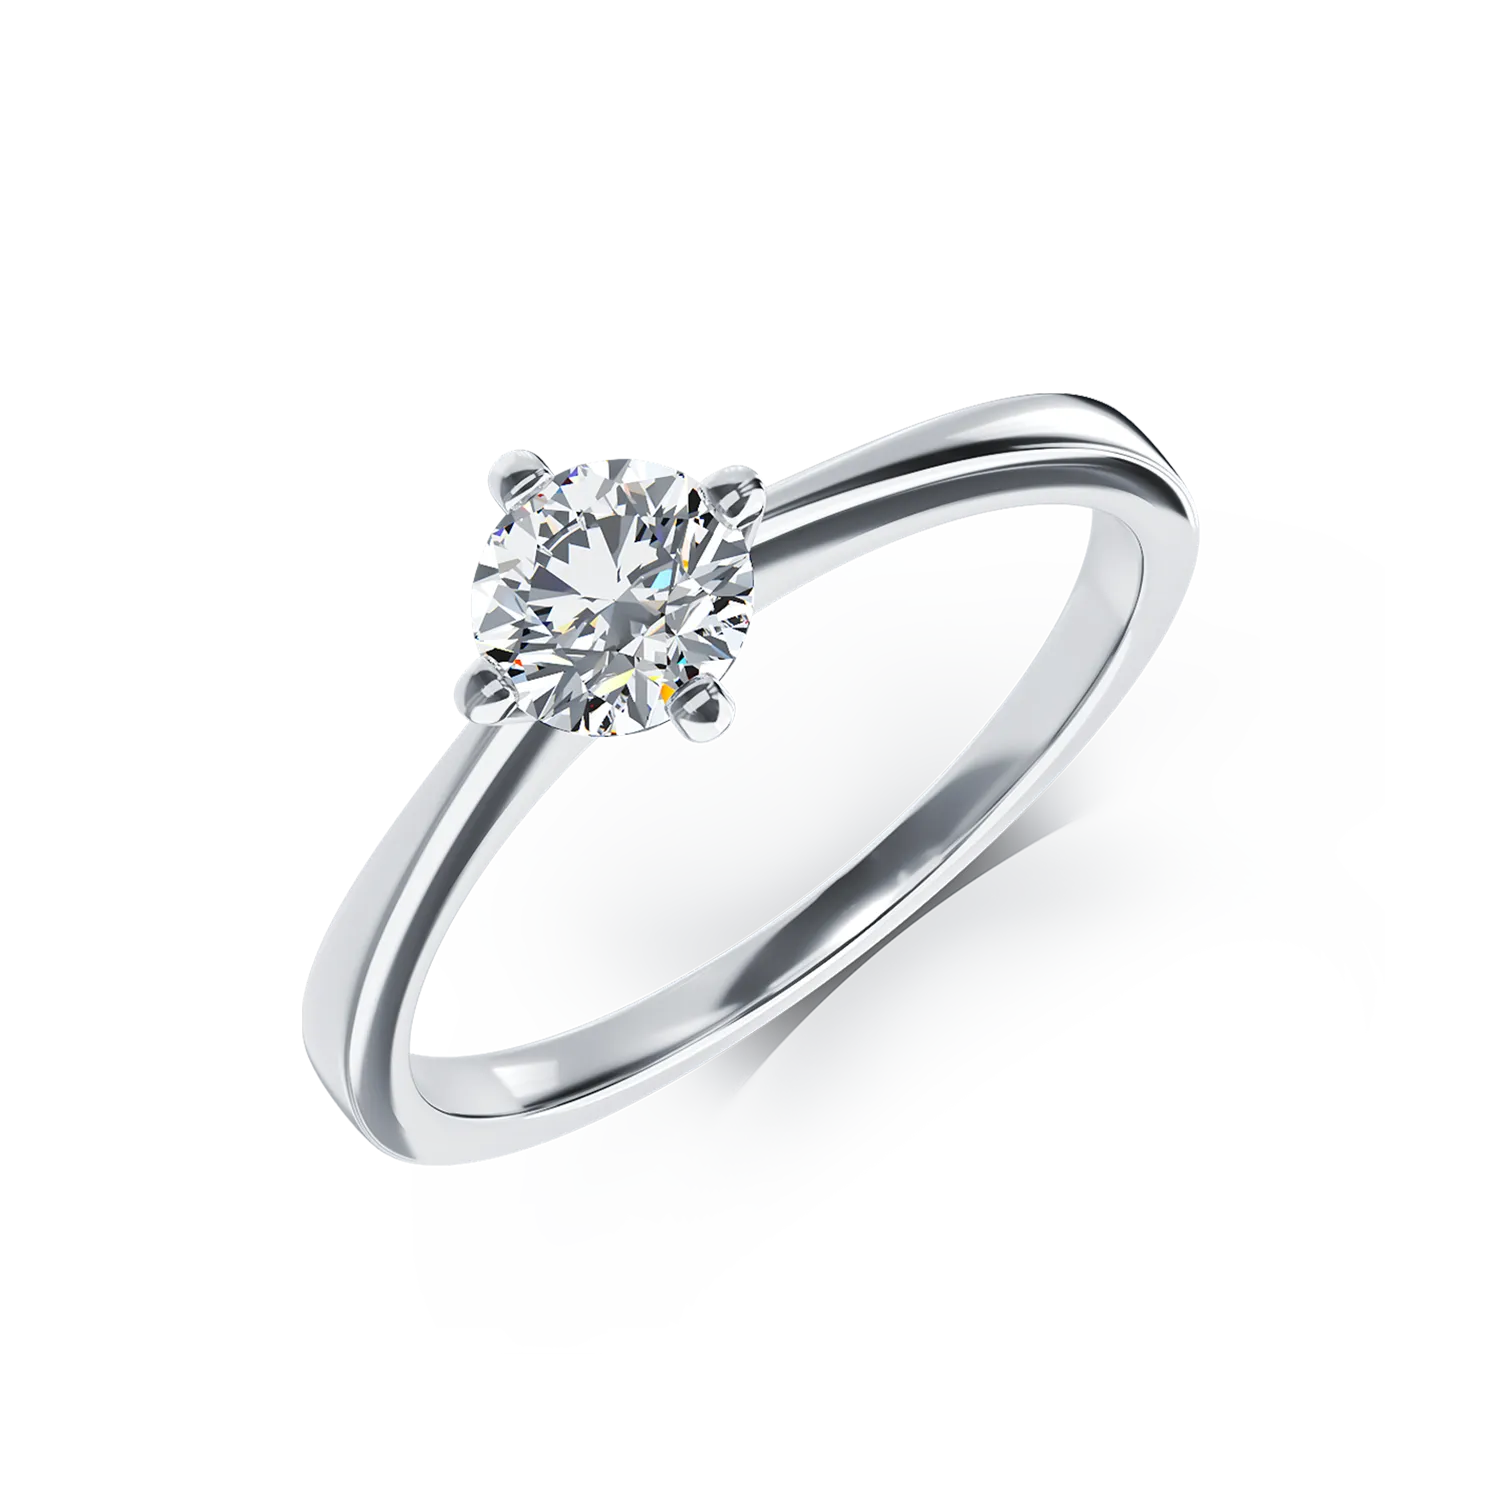 Inel de logodna din aur alb de 18K cu un diamant solitaire de 0.5ct